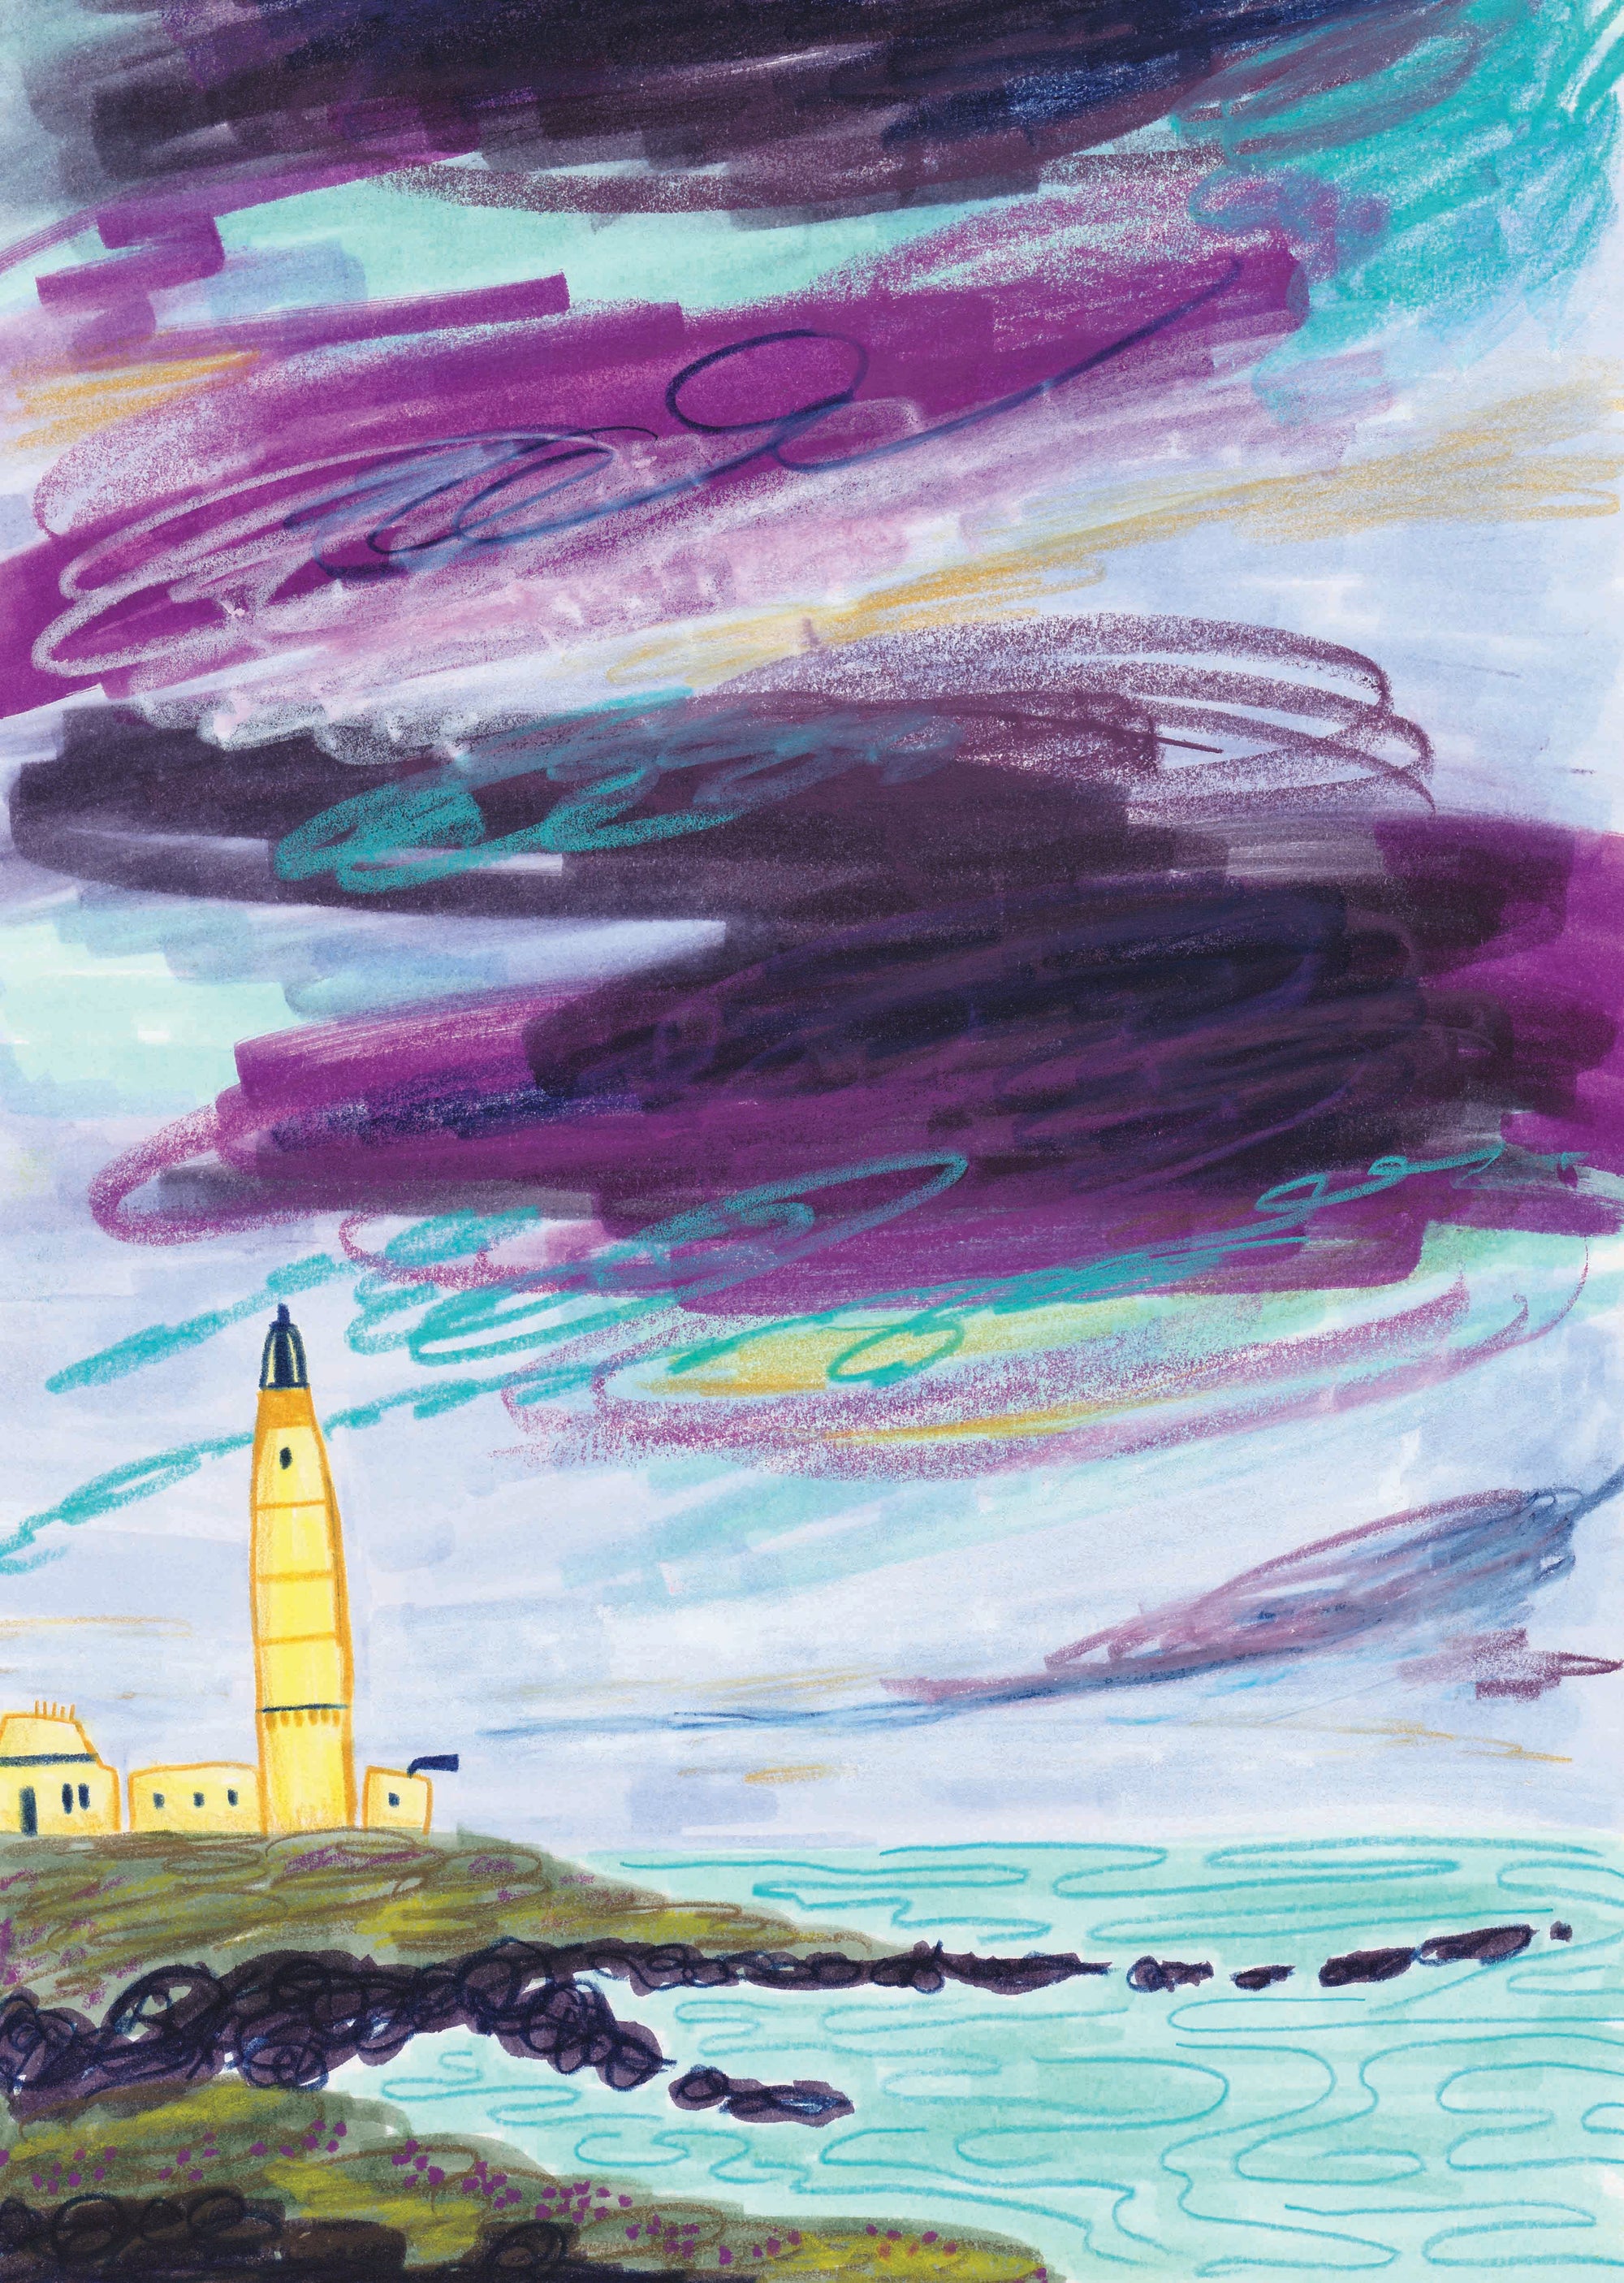 Corsewall Lighthouse Scottish Landscape Art Card by joy jen at penny black